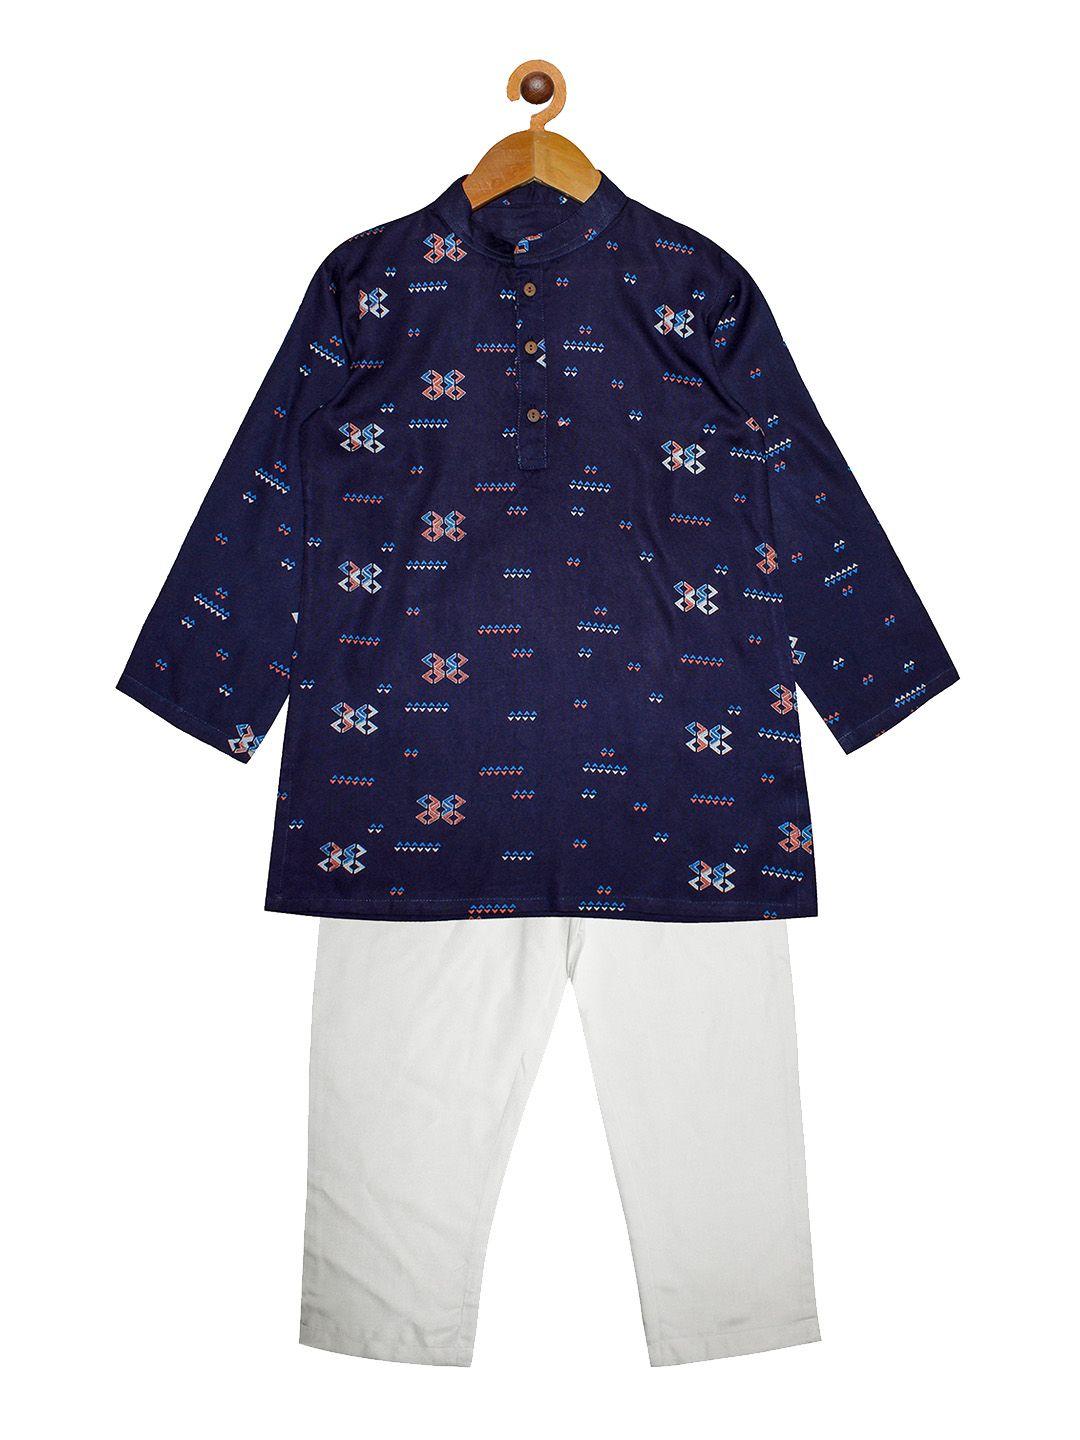 kiddopanti boys navy blue printed kurta with pyjamas